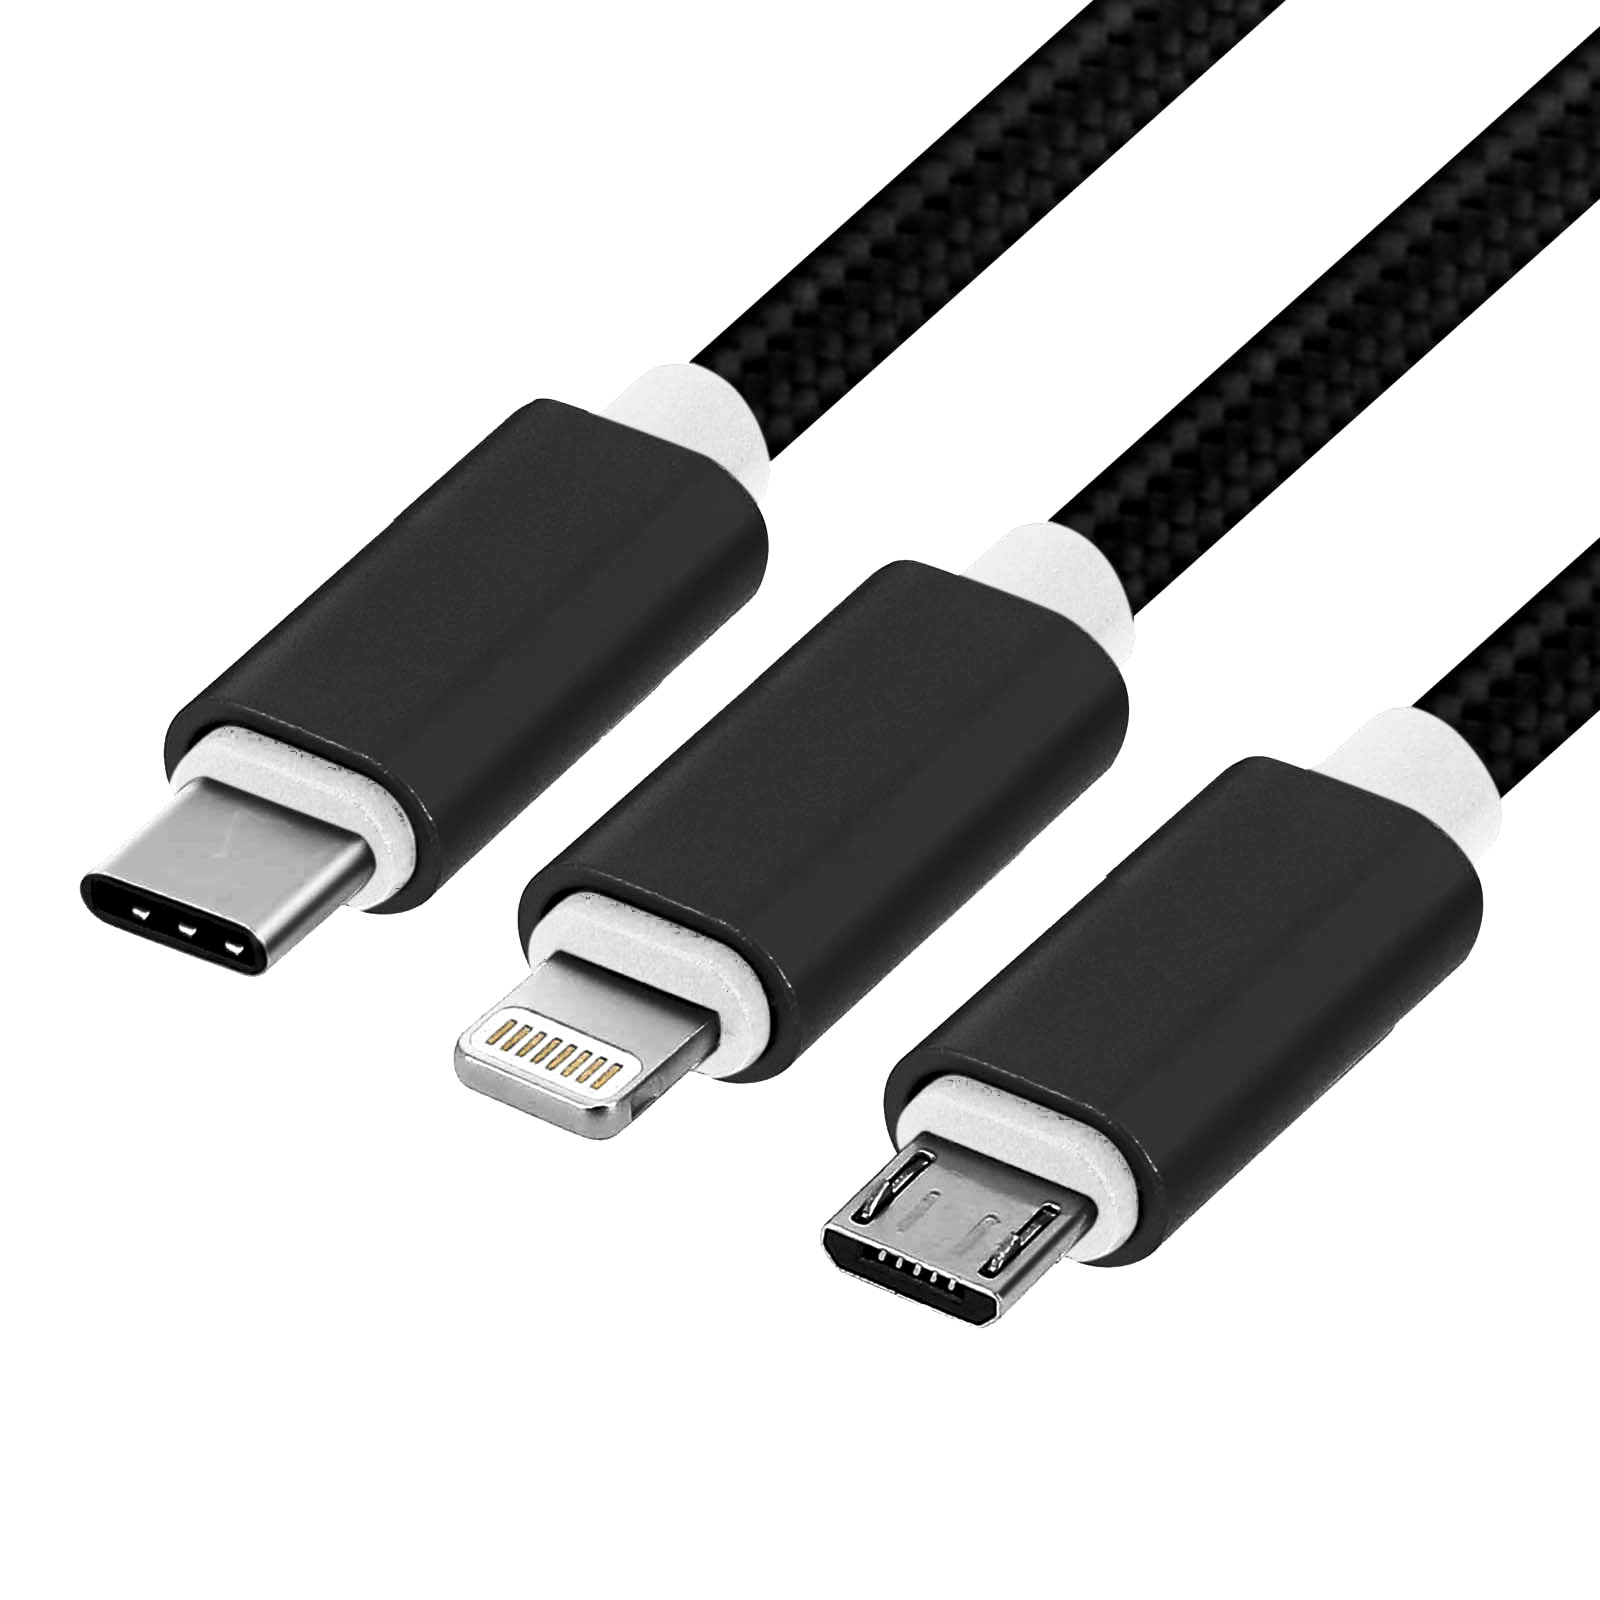 Без кабеля не обойтись, возьмите разные, а еще можно переходник для прикуривателя на USB